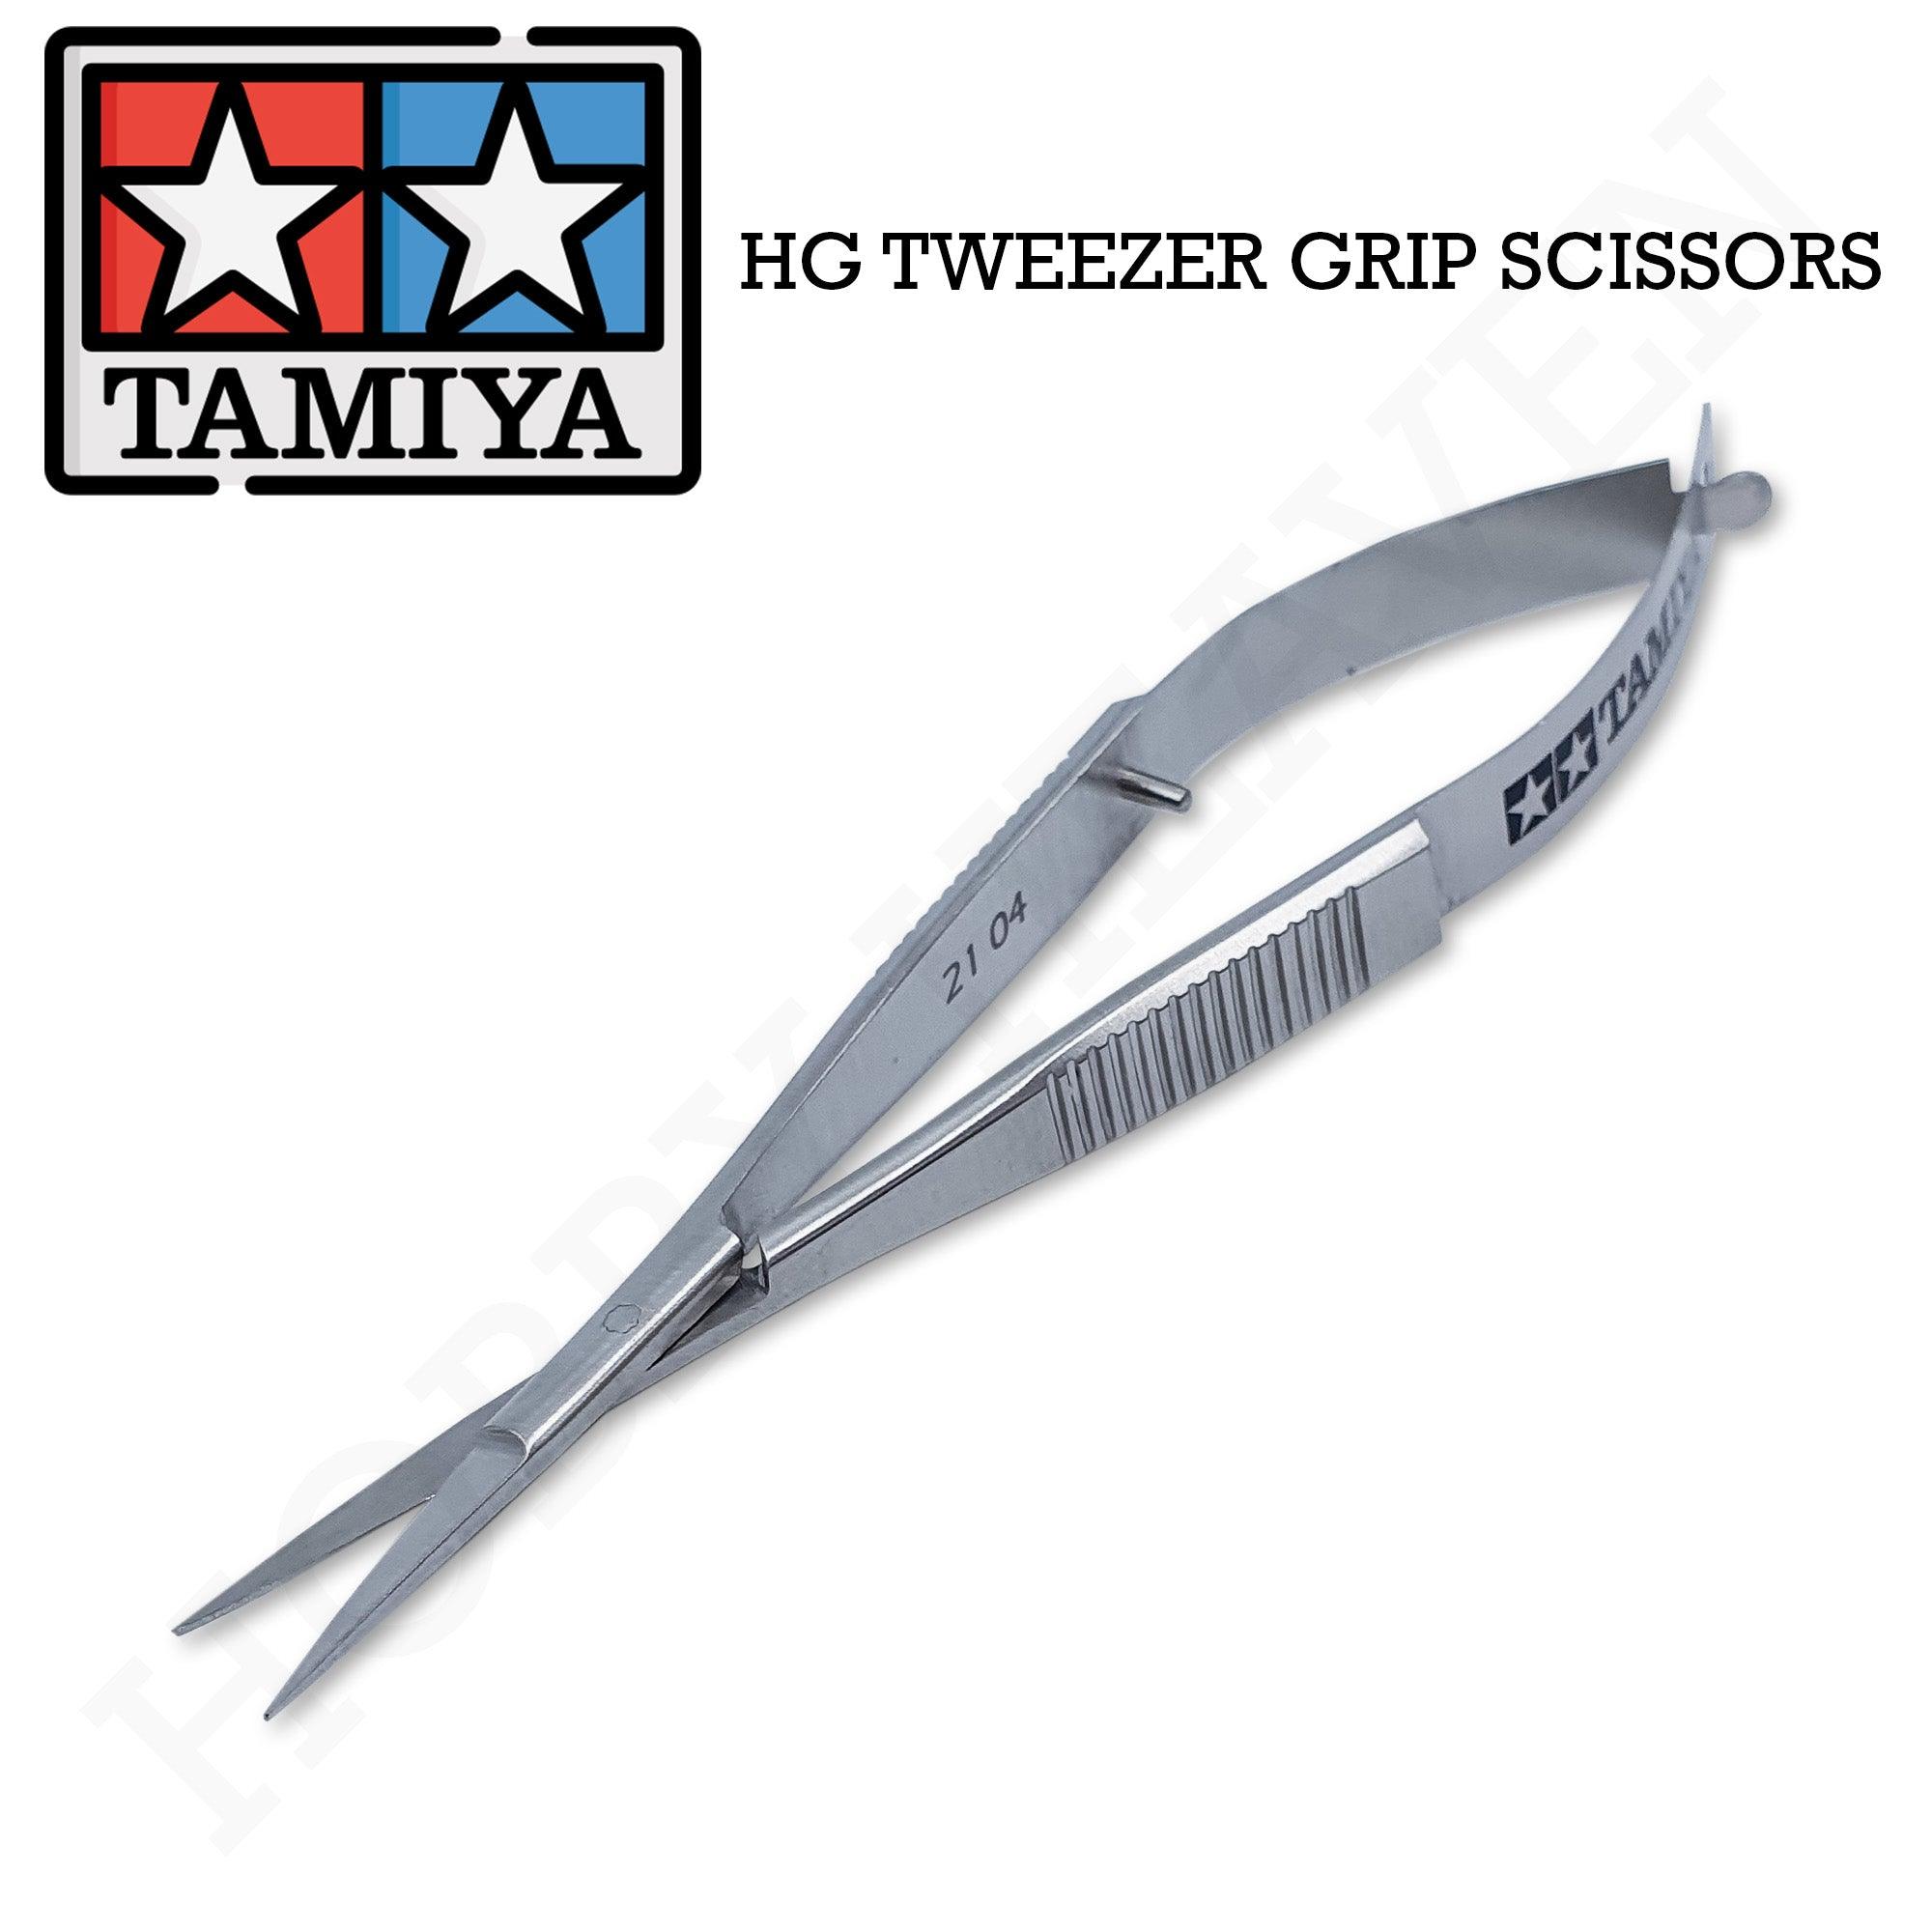 Tweezers and Scissors